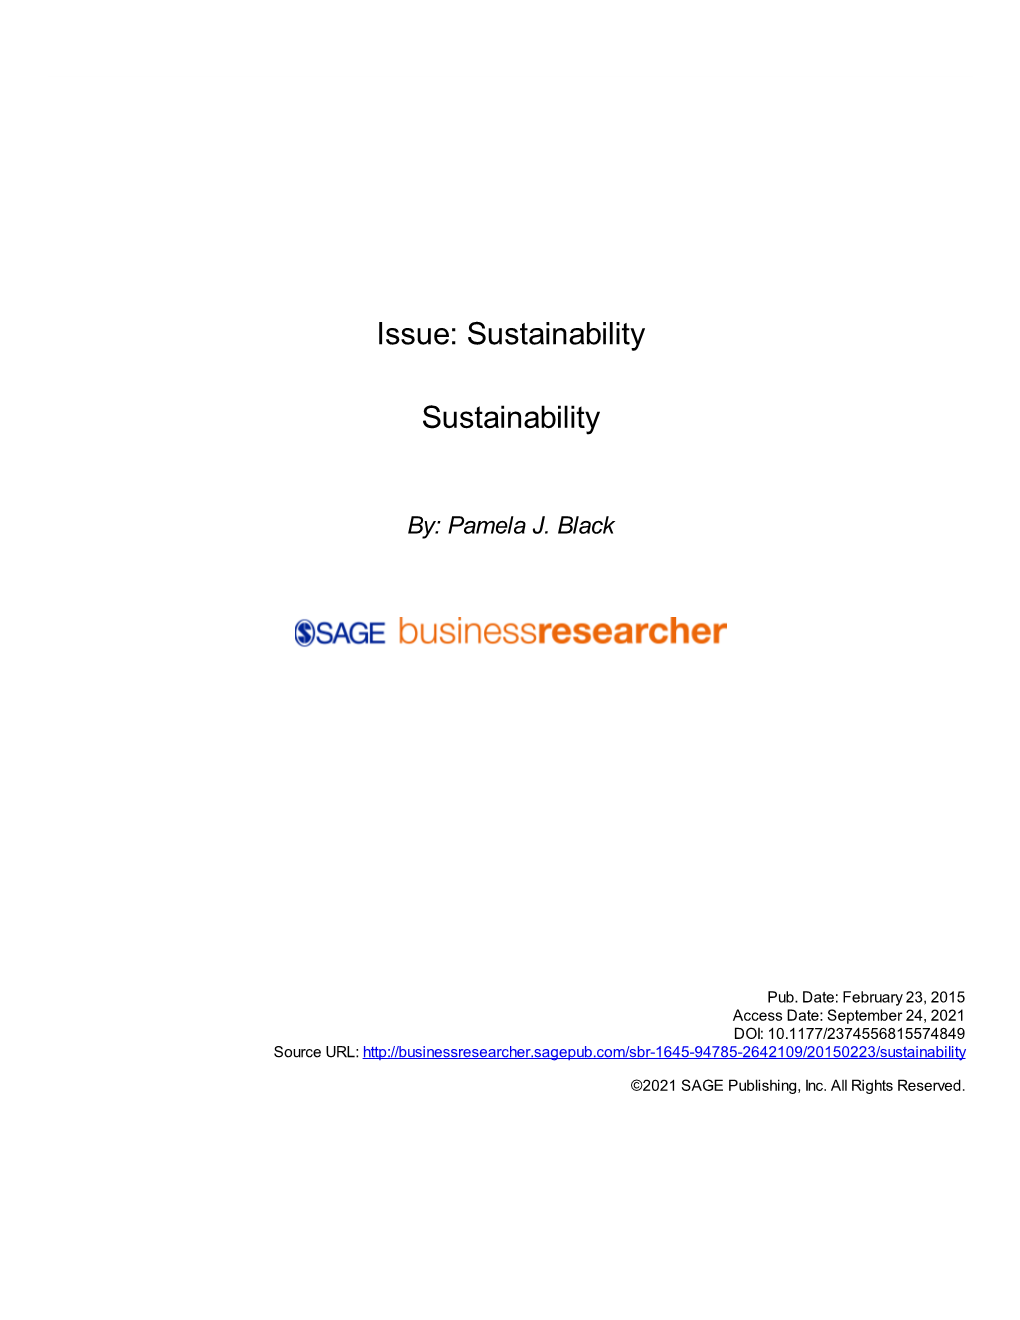 Sustainability Sustainability